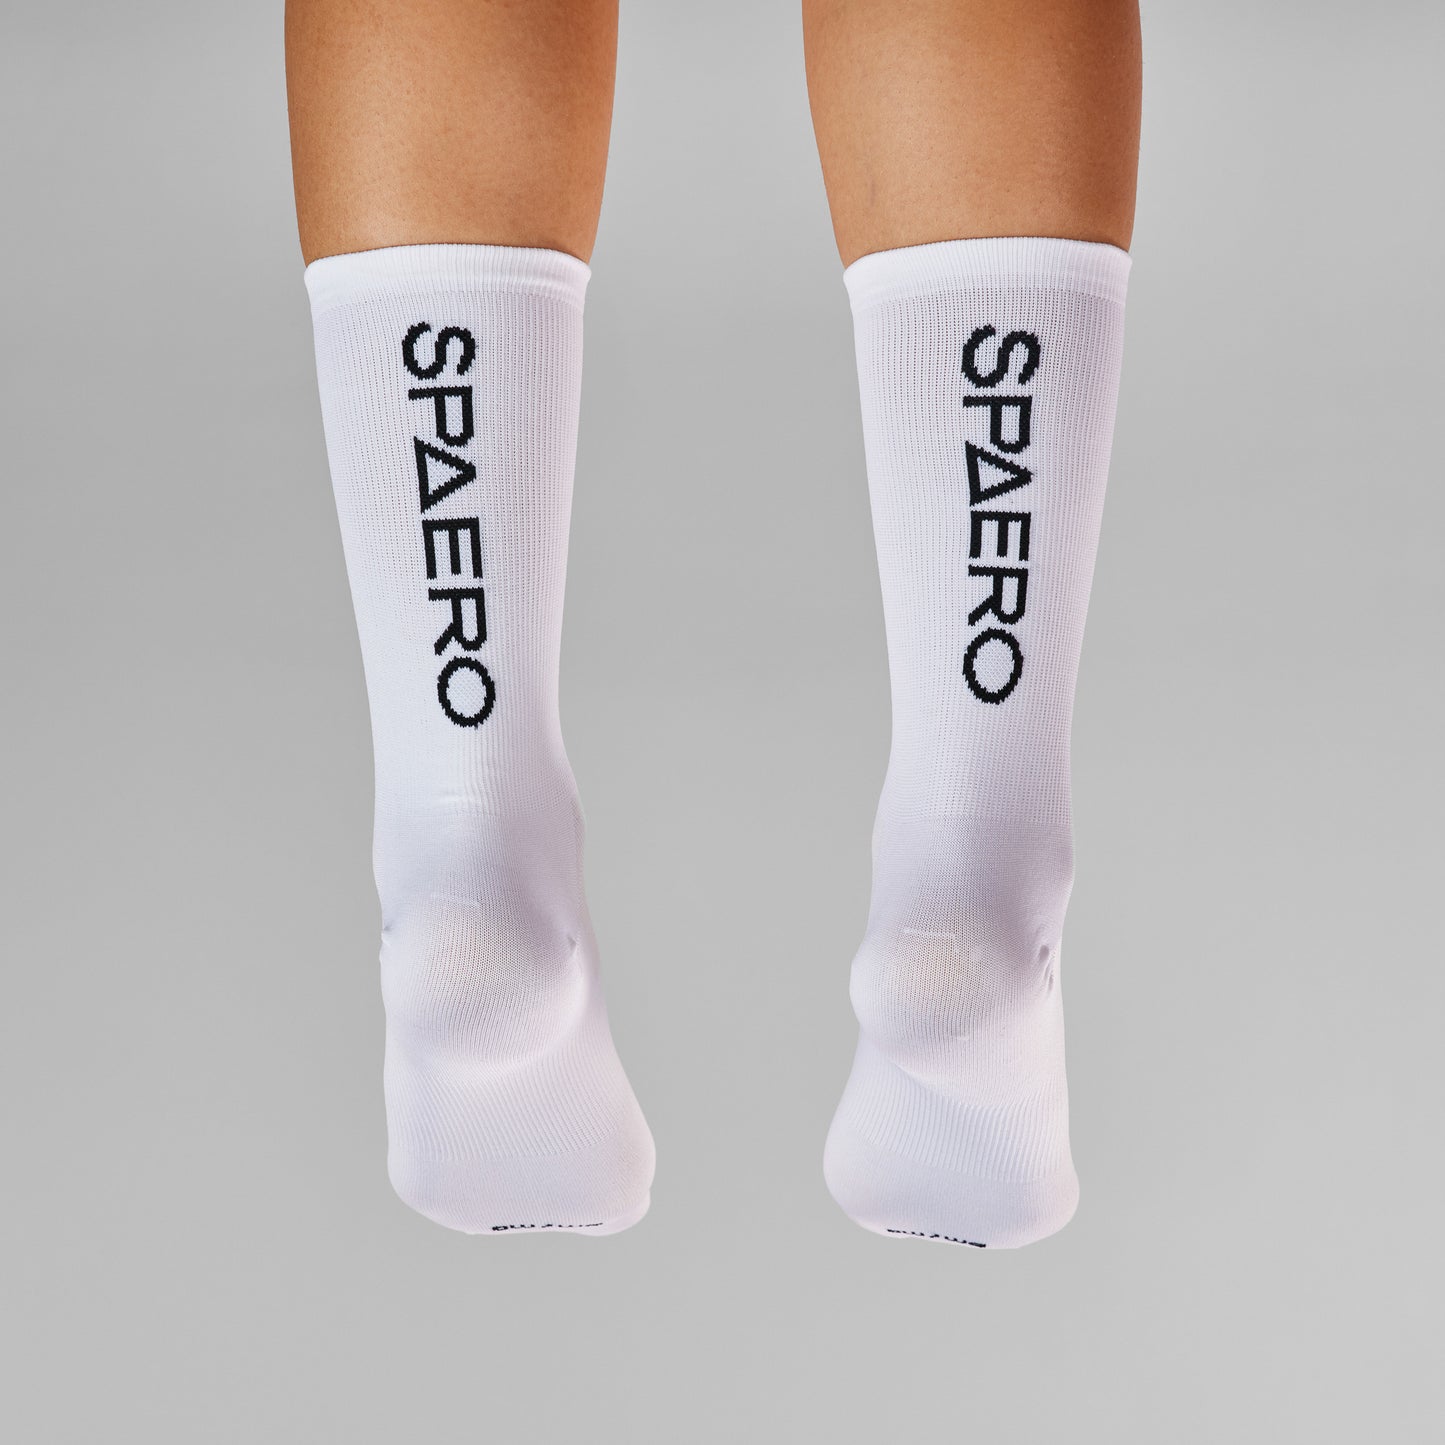 SPAERO Signature Socks